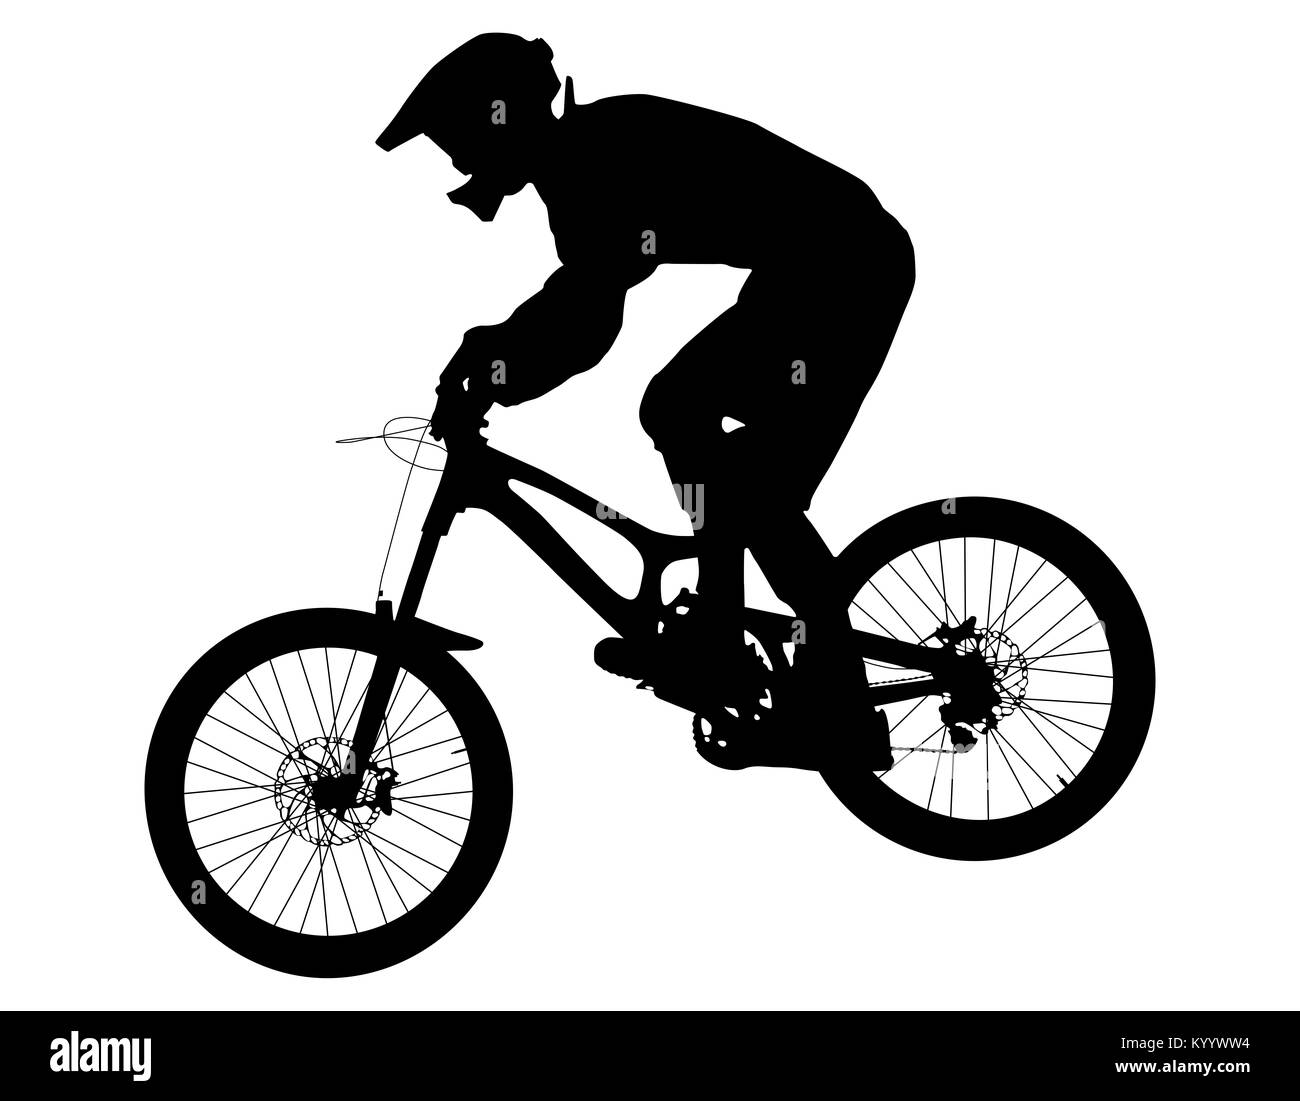 Sportler Reiter auf dem Fahrrad Mountainbike schwarze Silhouette Stockfoto